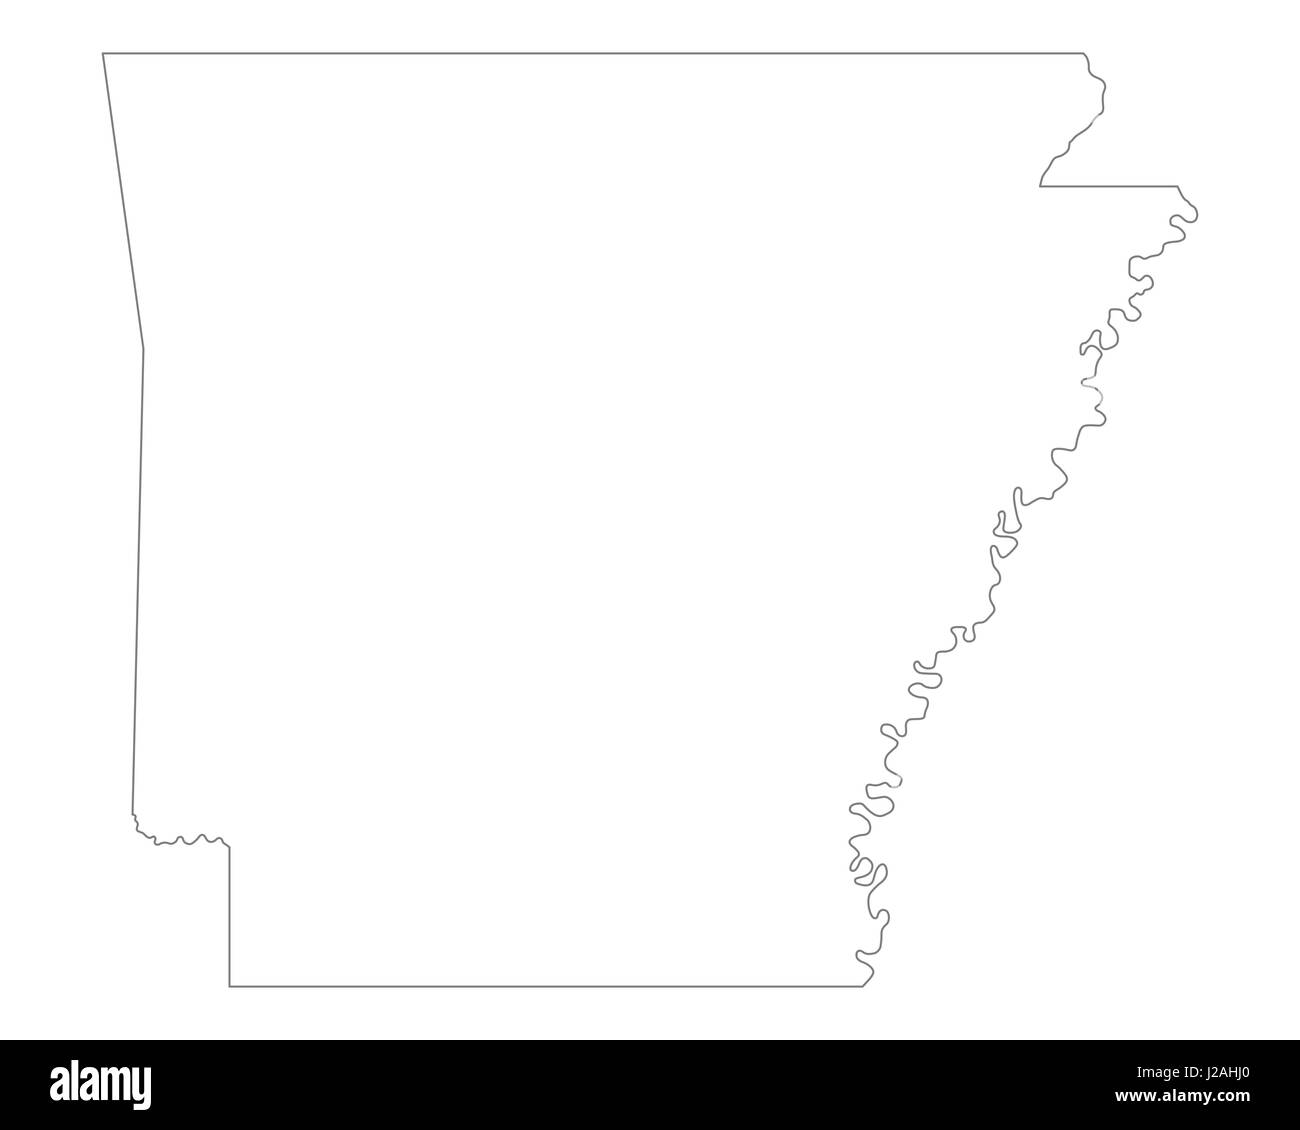 Map Of Arkansas J2AHJ0 